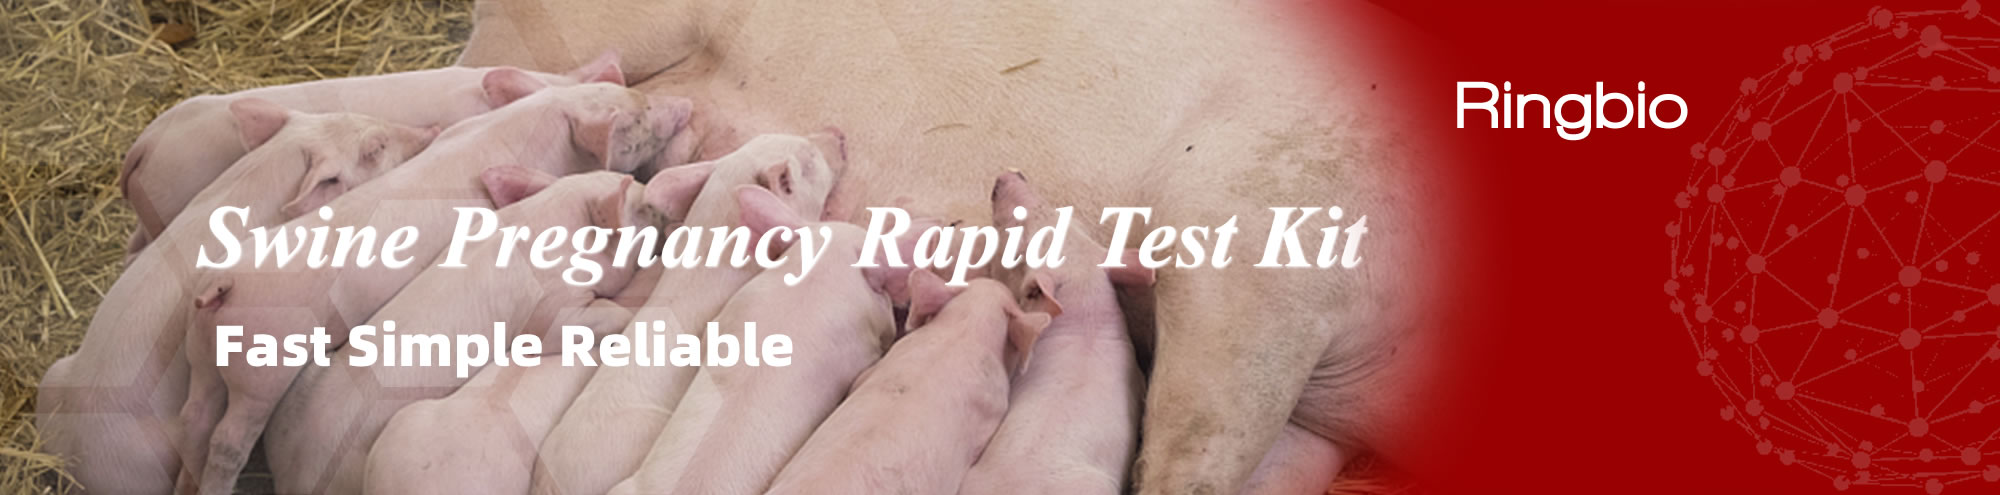 Kit de prueba rápida de preñez en cerdos de Ringbio, 10min para detectar preñez en cerdos